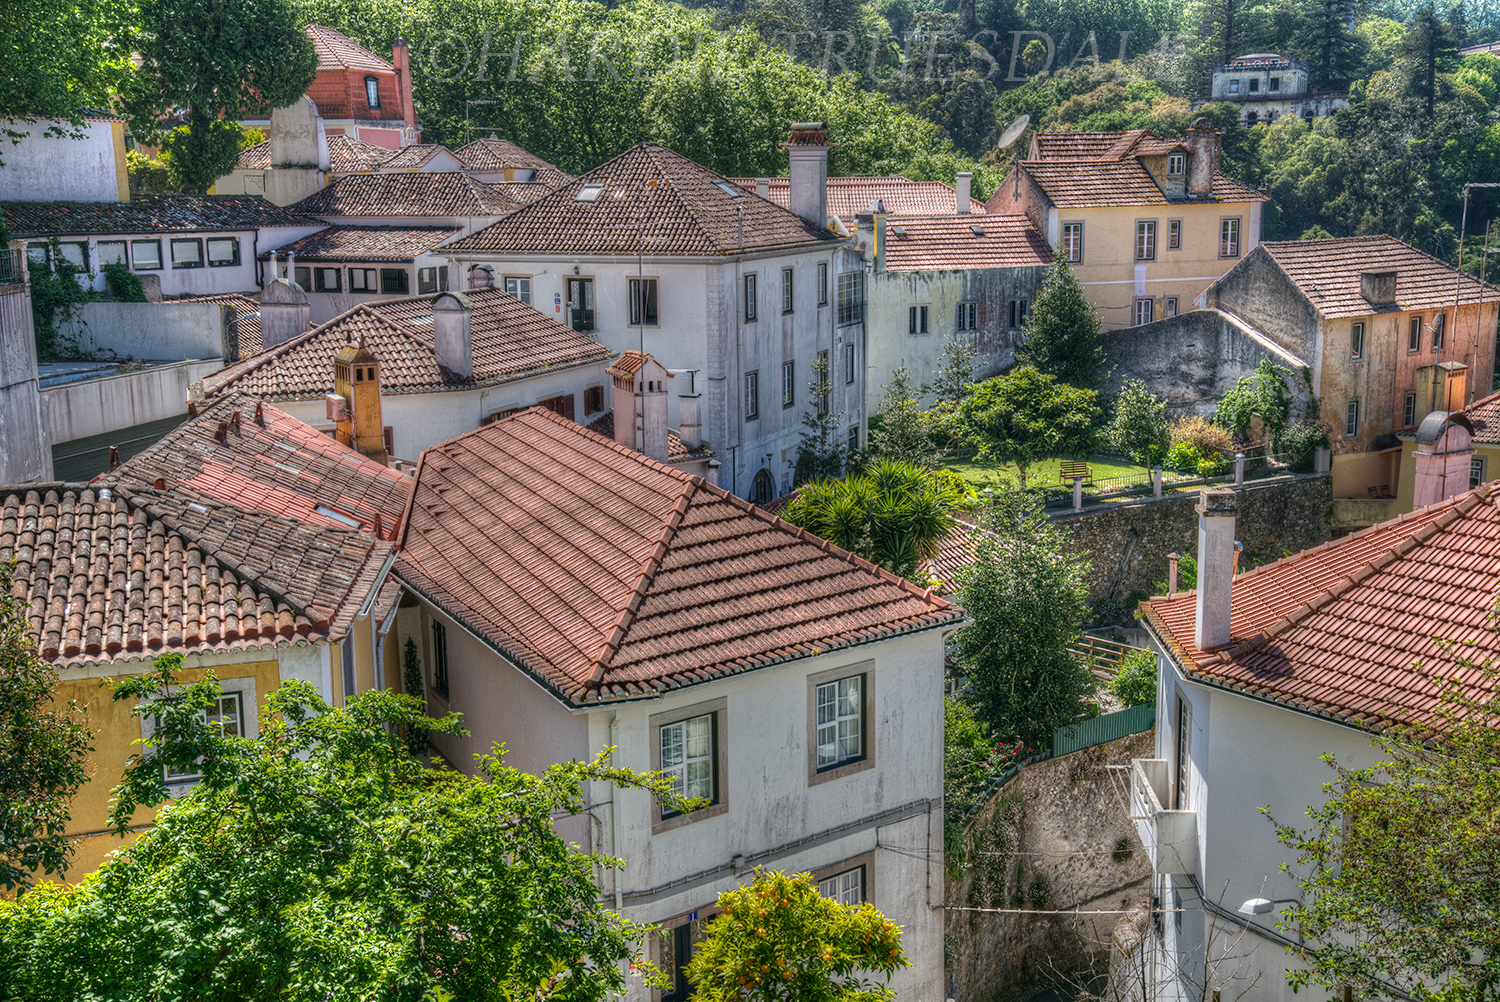 PT#020 "Tile Rooftops" Sintra